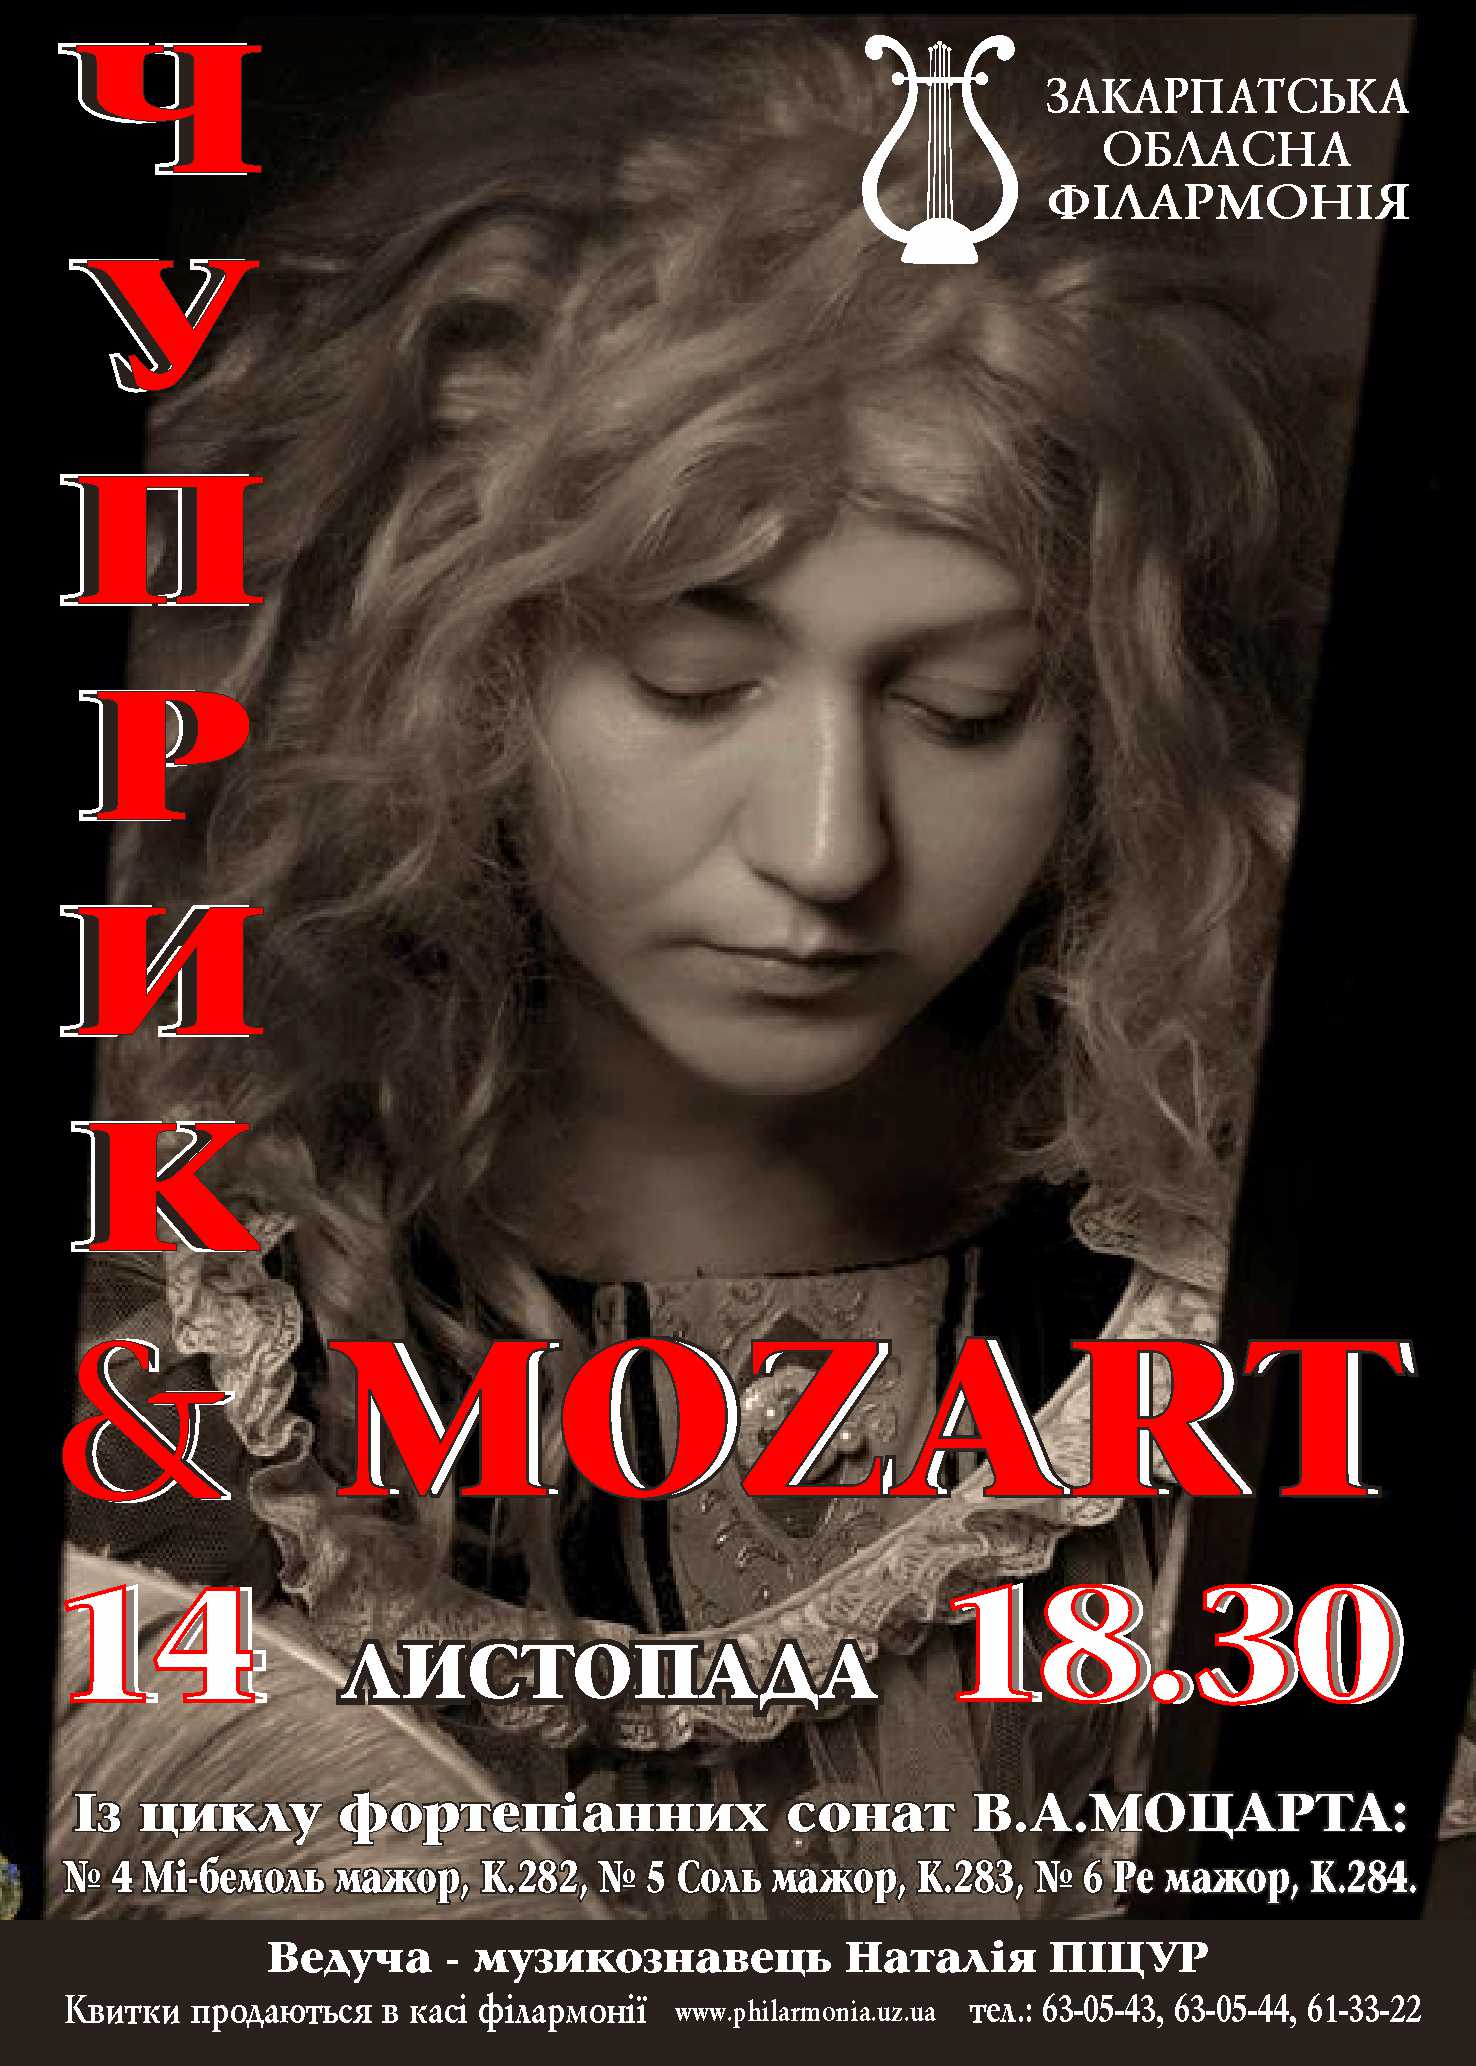 И 14 ноября солистка Закарпатской областной филармонии, народная артистка Украины Этелла Чуприк презентует второй вечер из цикла фортепианных сонат В.А.Моцарта. 